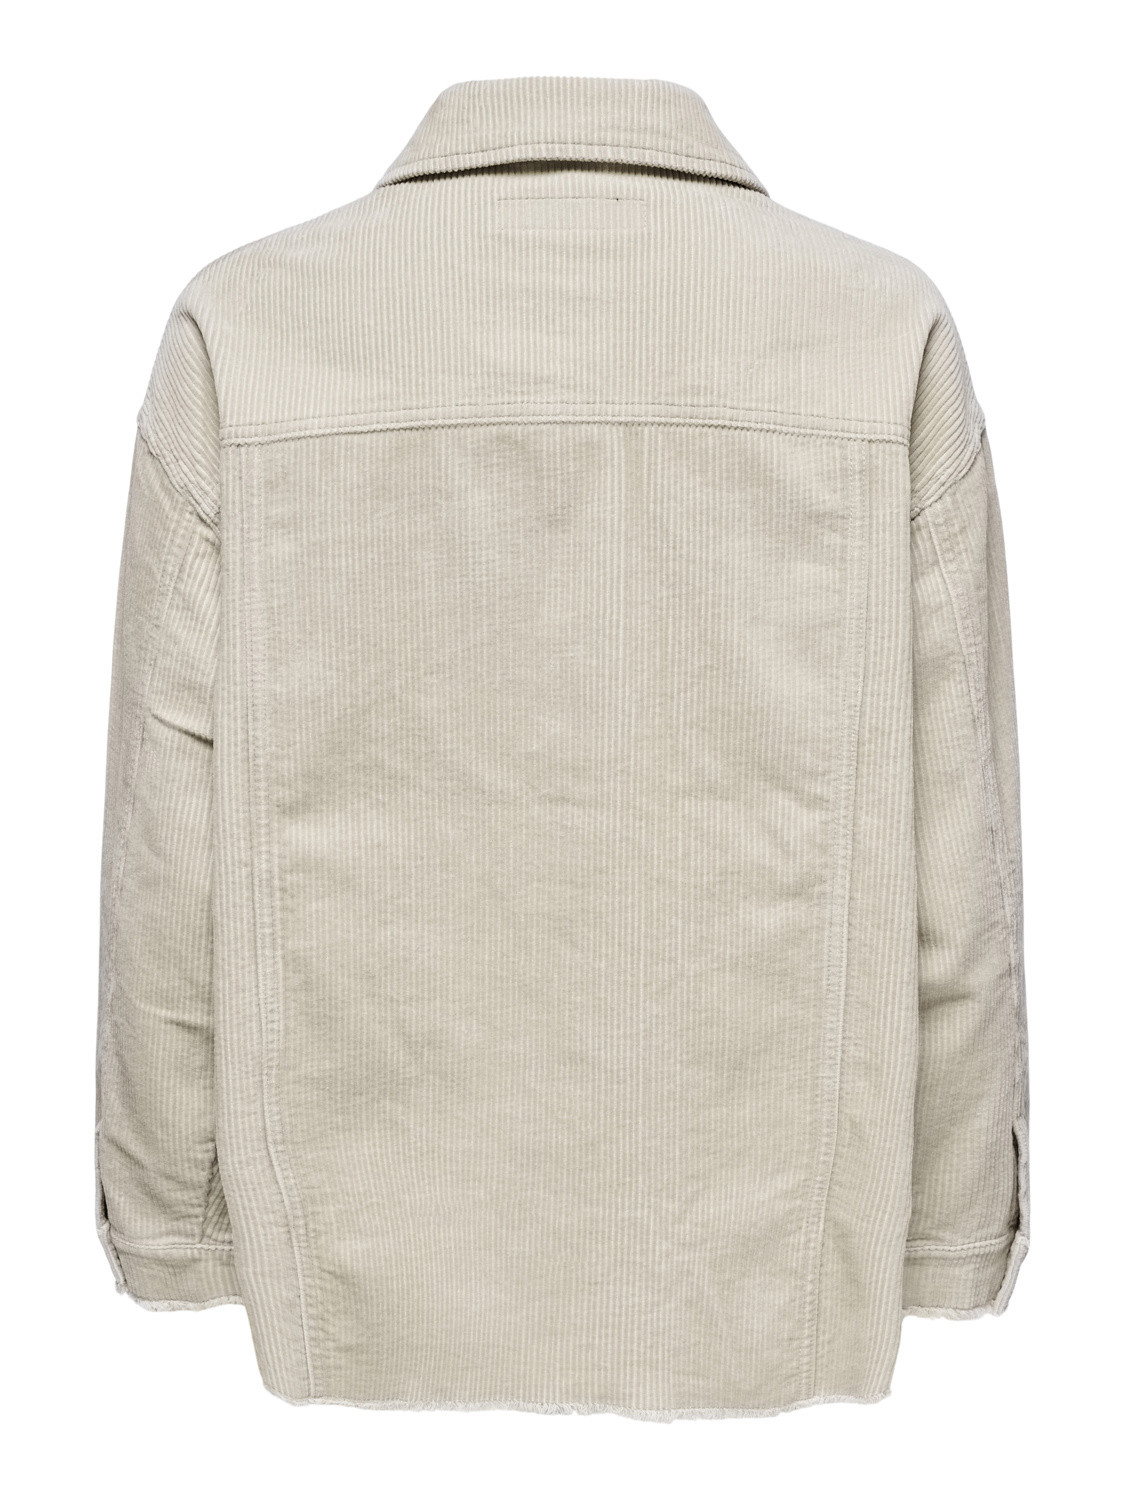 Velvet jacket, Beige, large image number 1